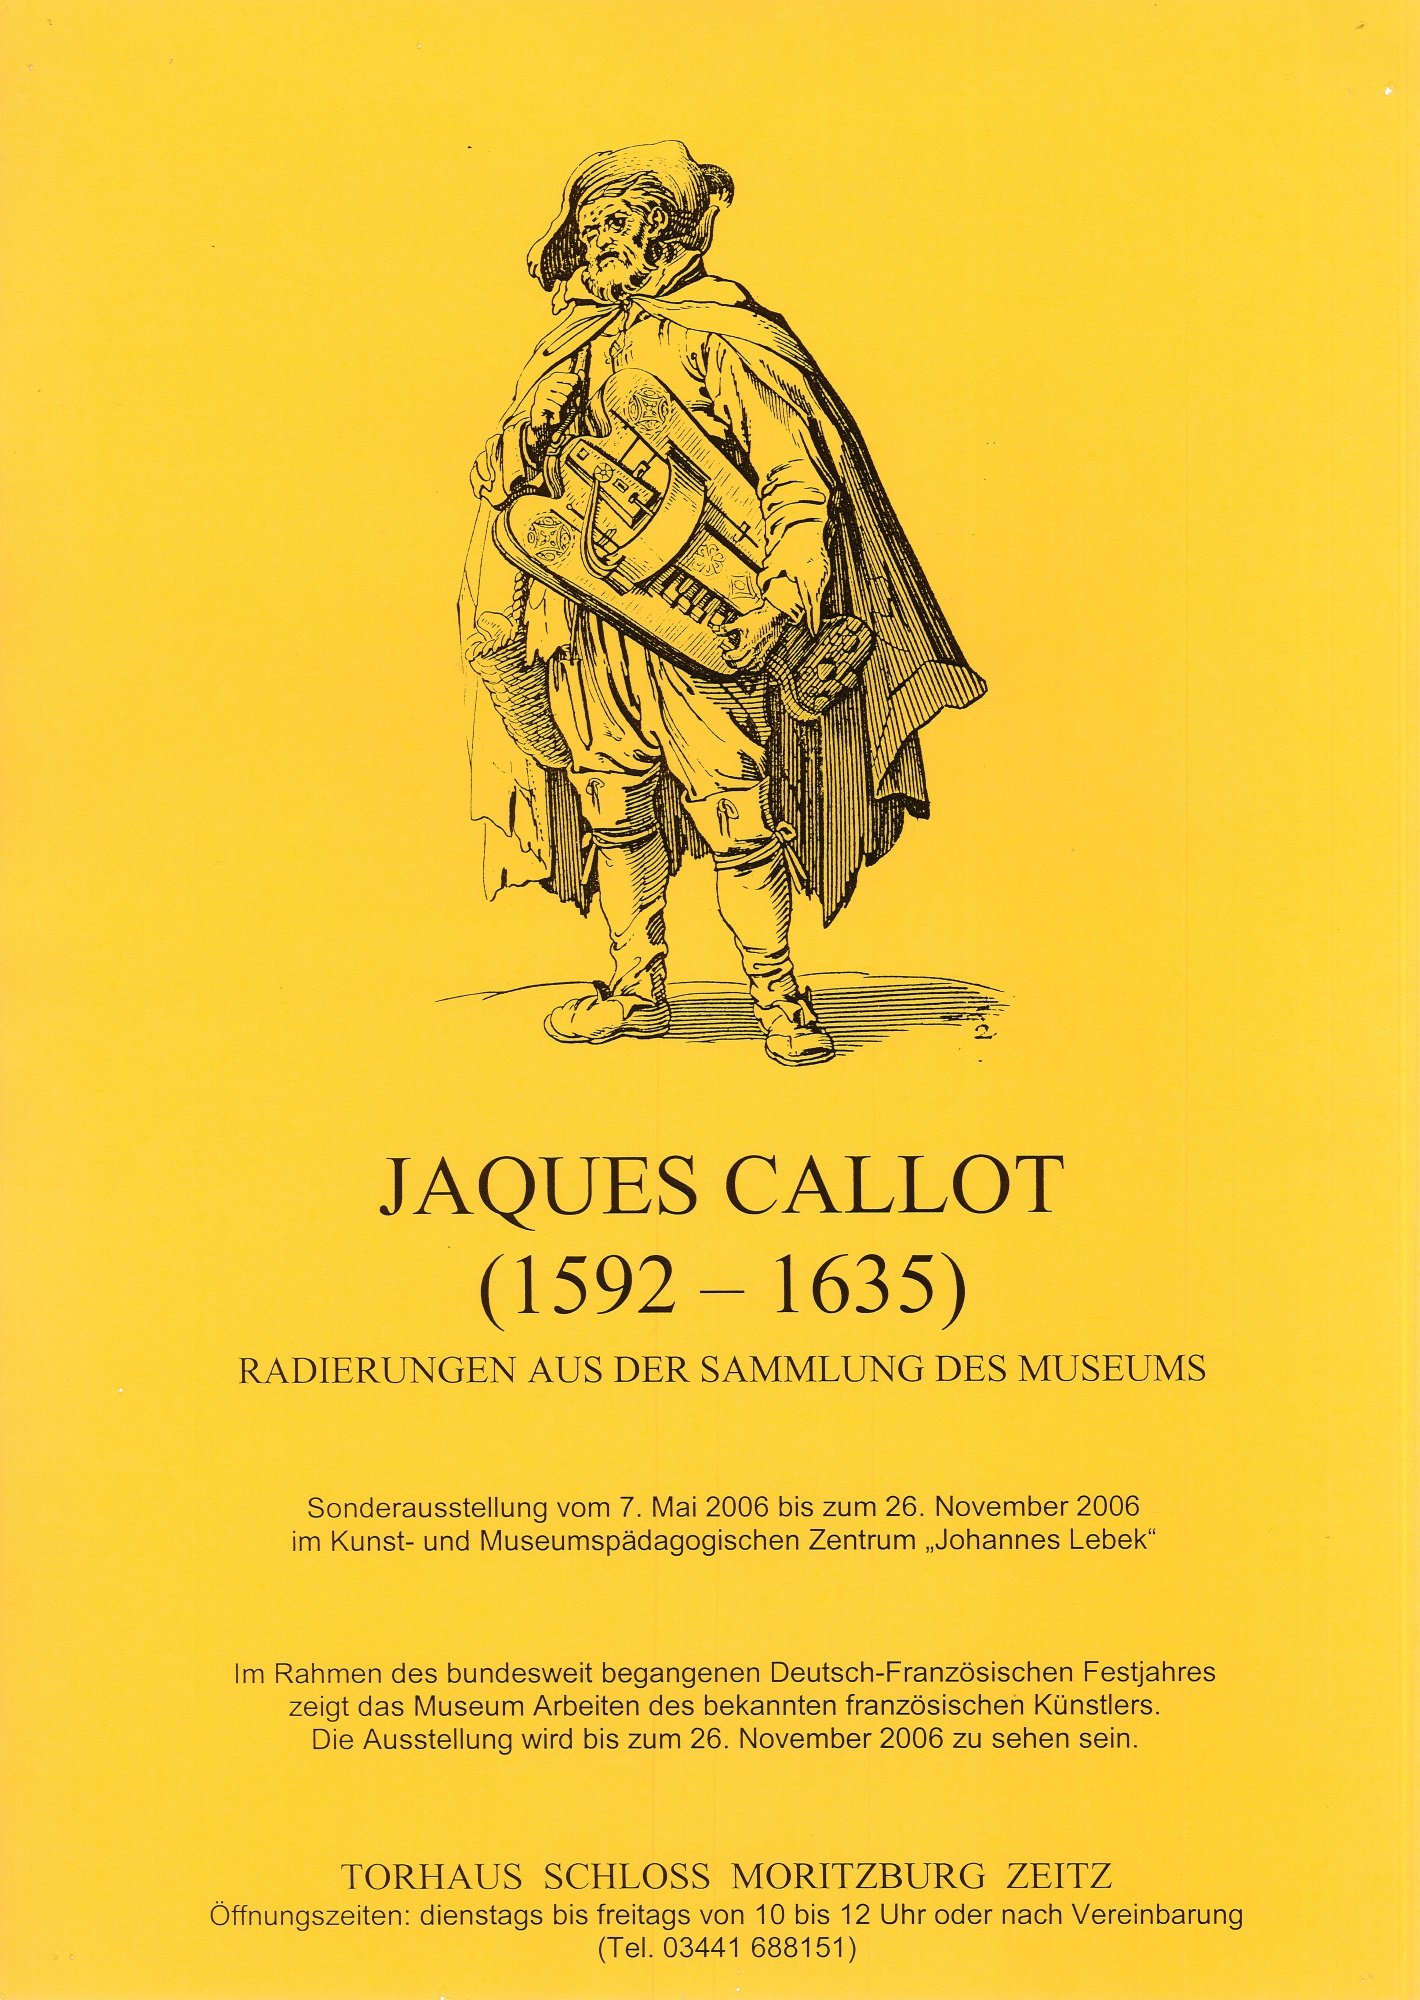 Plakat "Jaques Callot (1592-1635)" (Museum Schloss Moritzburg Zeitz RR-R)